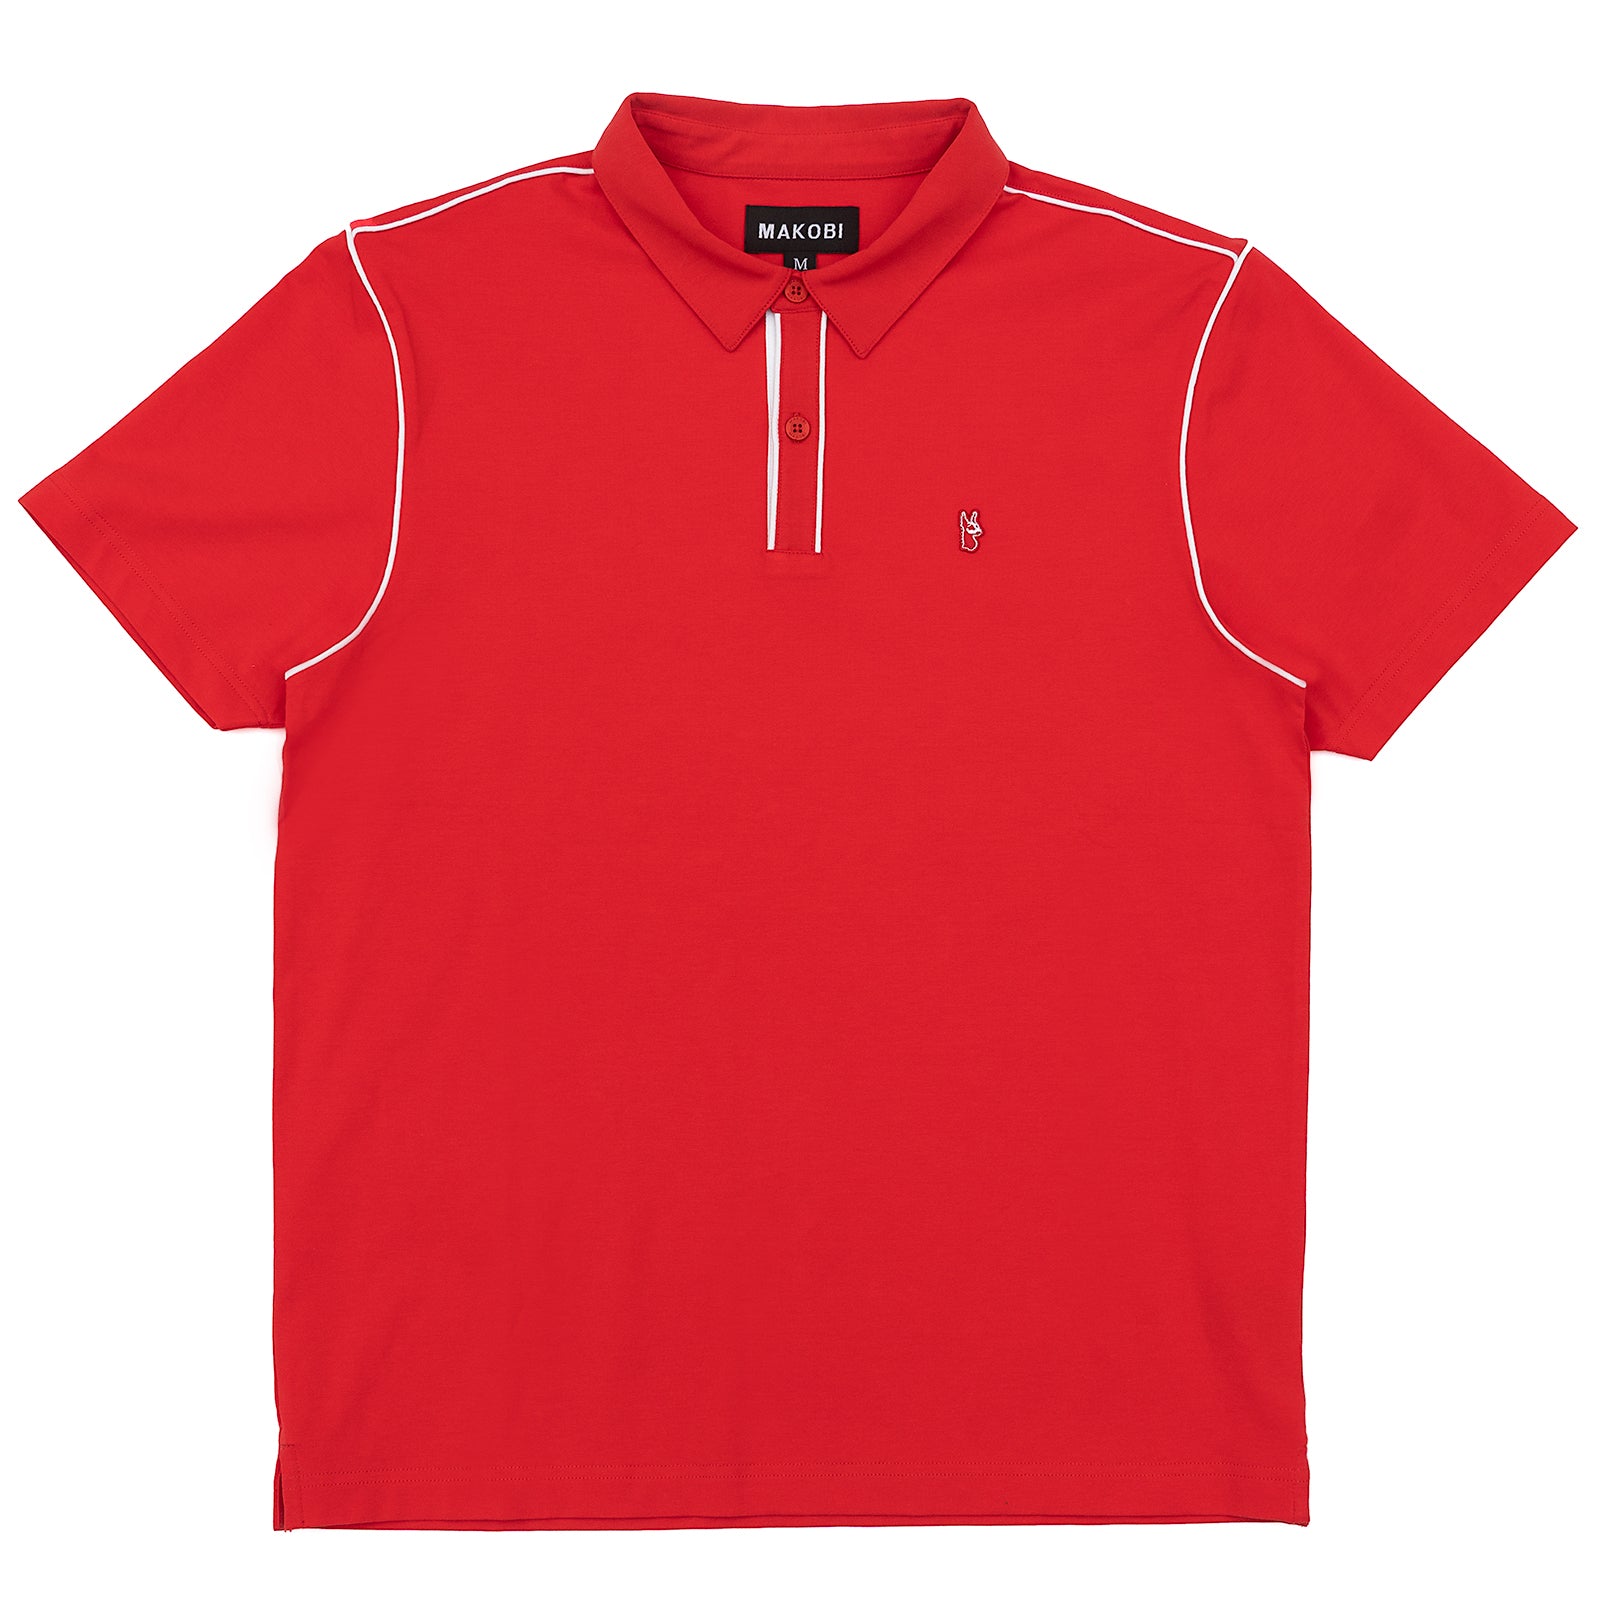 M344 Makobi Ricci Core Polo Shirt - Red